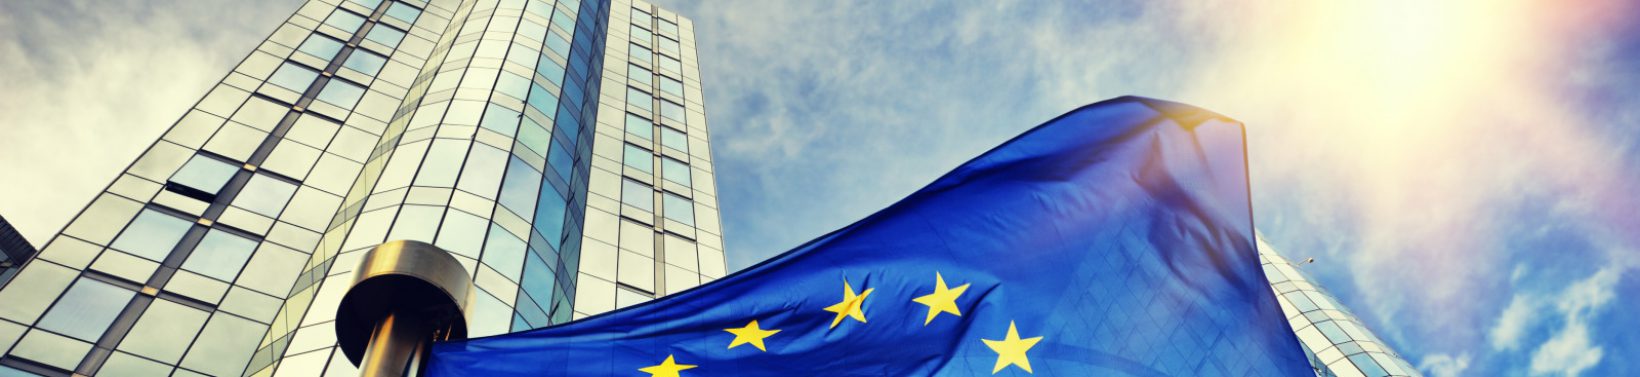 Drapeaux de l'UE en face du batiment du Parlement europeen. Bruxelles Belgique